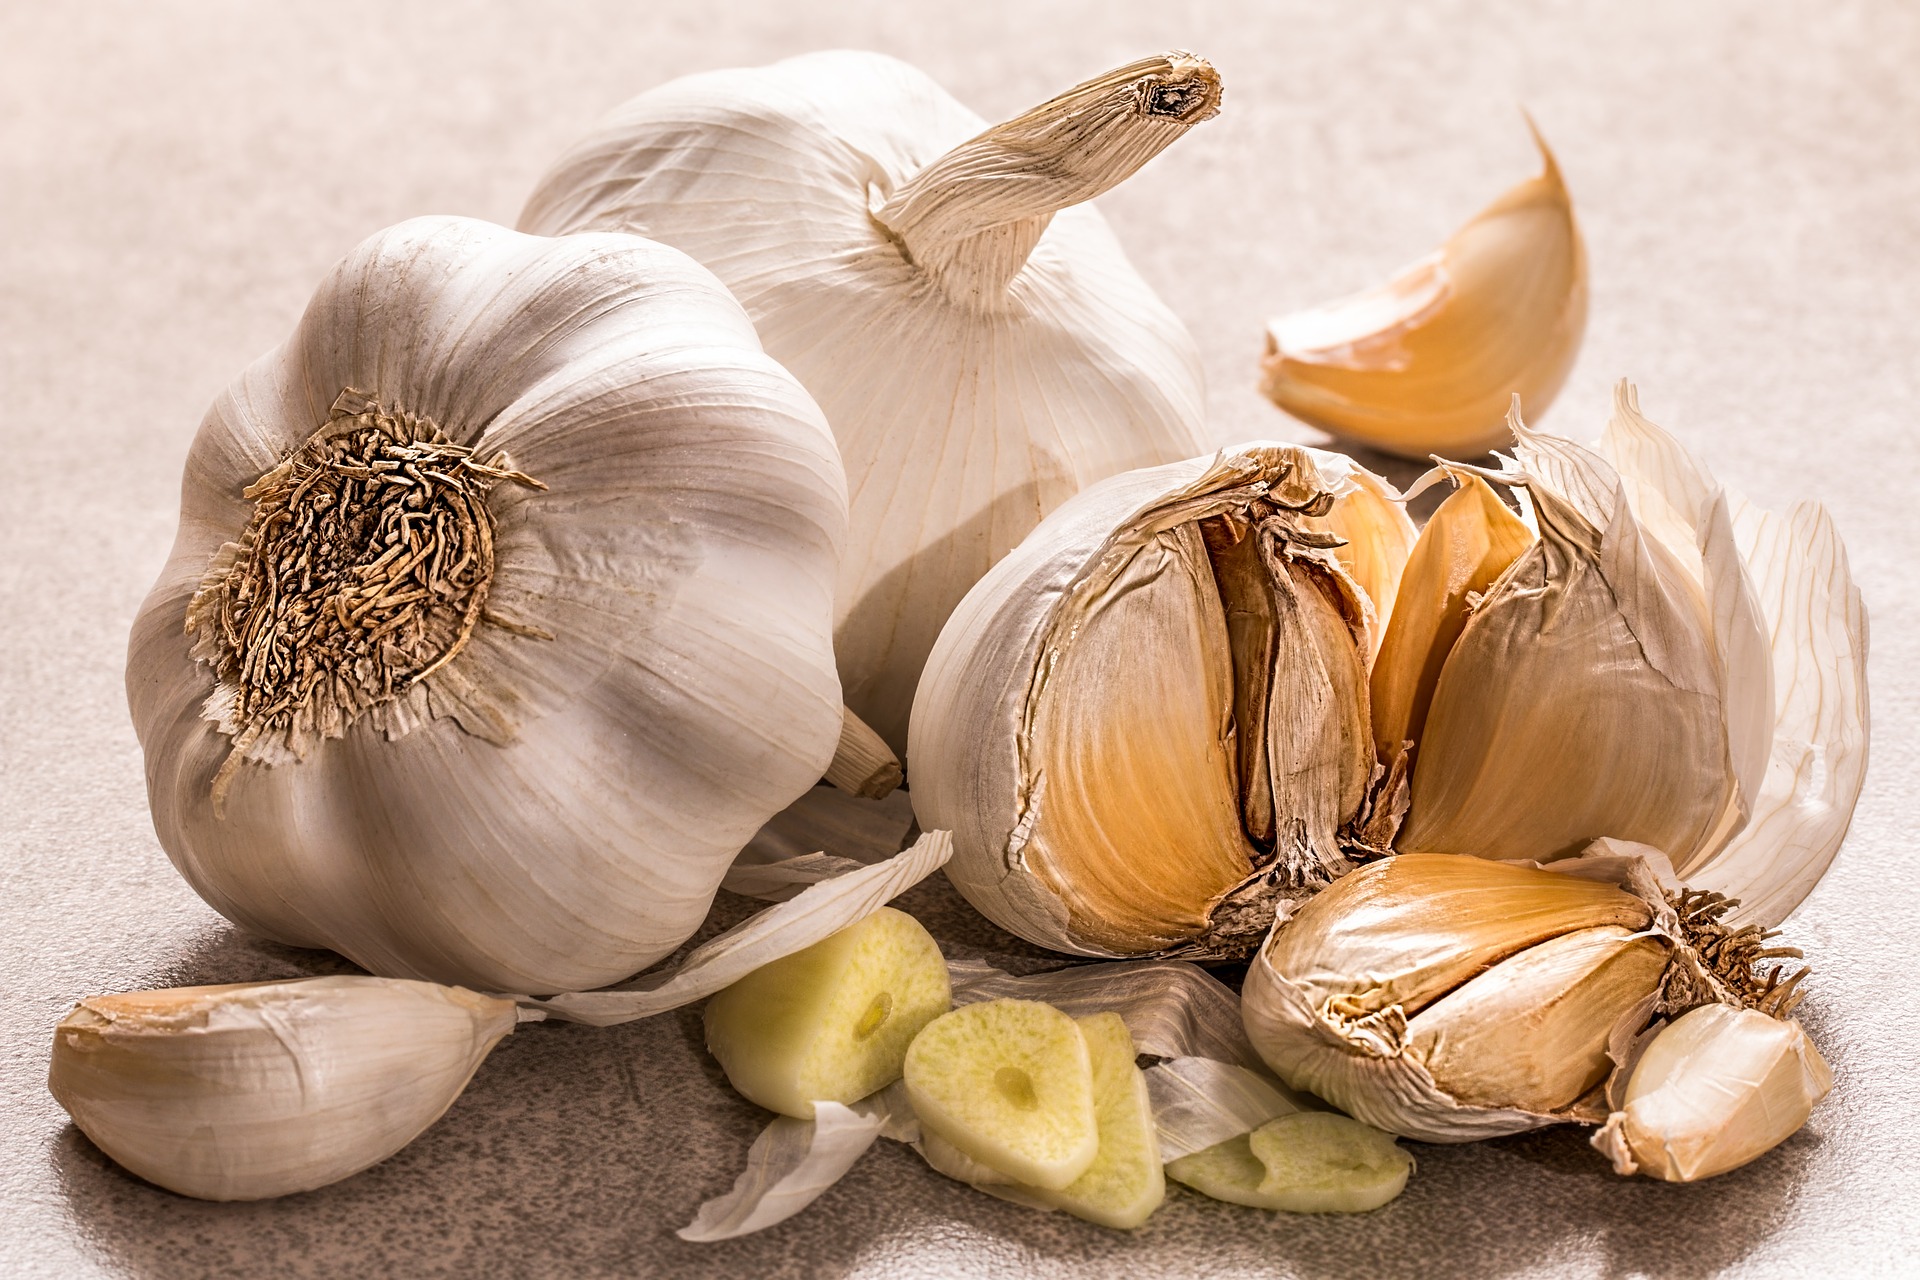 Integratori alimentari: proprietà e benefici dell’aglio in perle